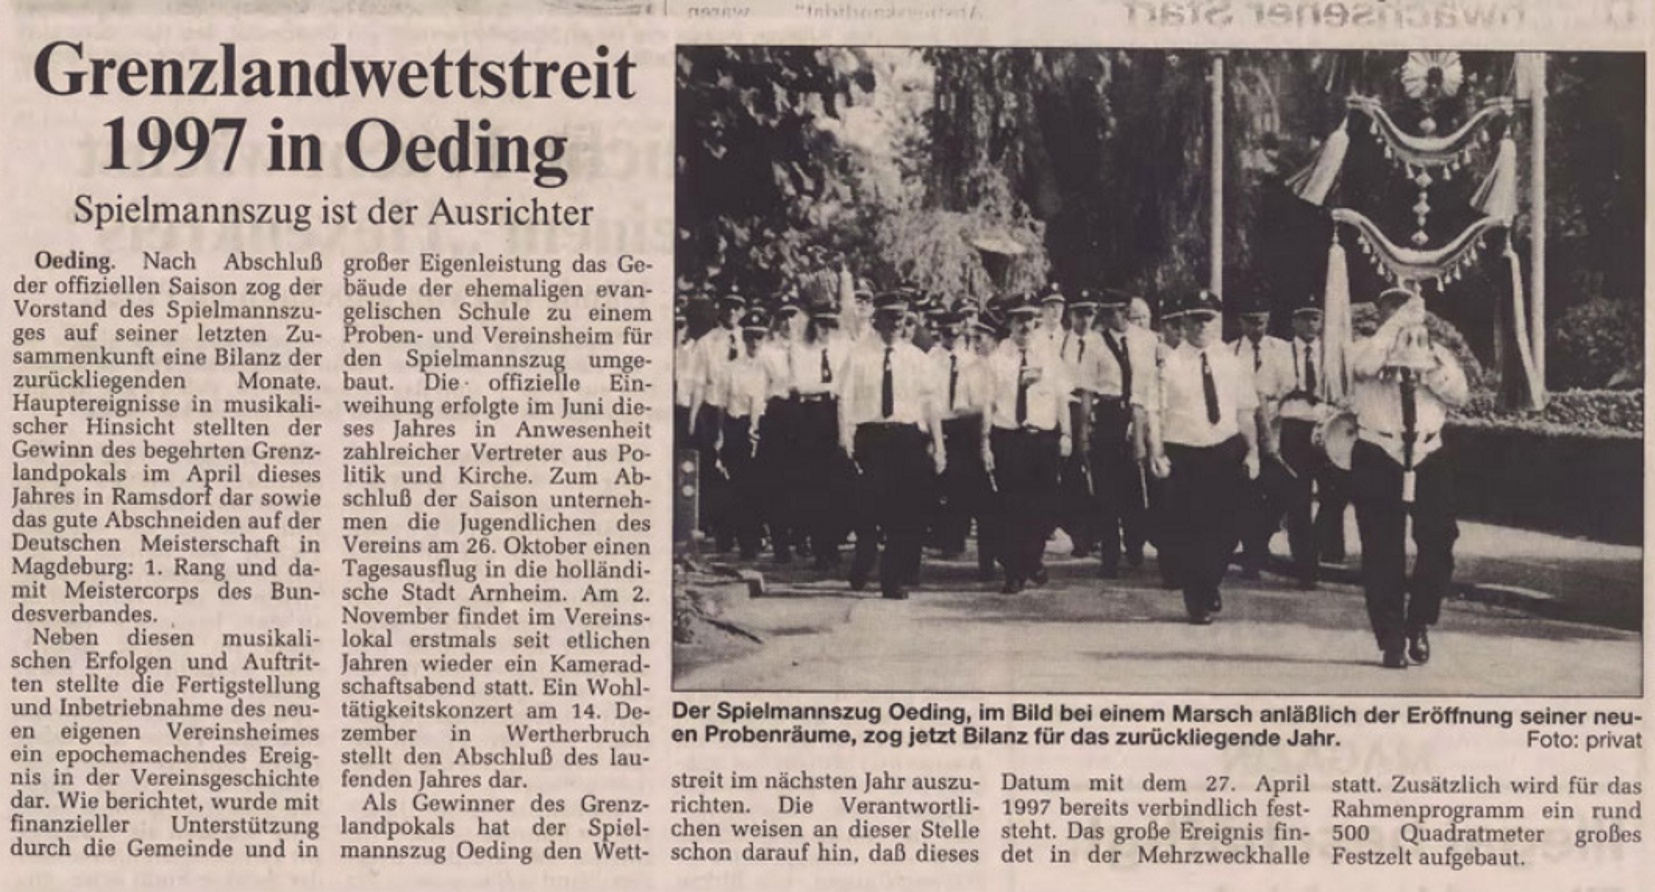 Grenzlandwettstreit 1997 in Oeding | Borkener Zeitung 23.10.1996